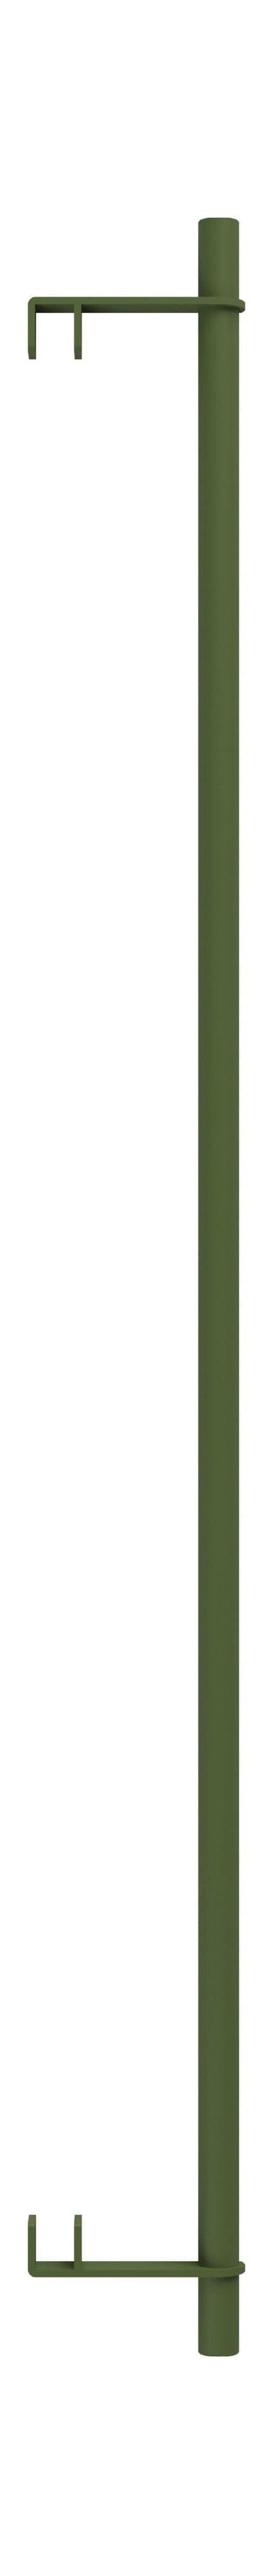 Systém regálů Moebe/Regály na zdi bar 85 cm, borovice zelená